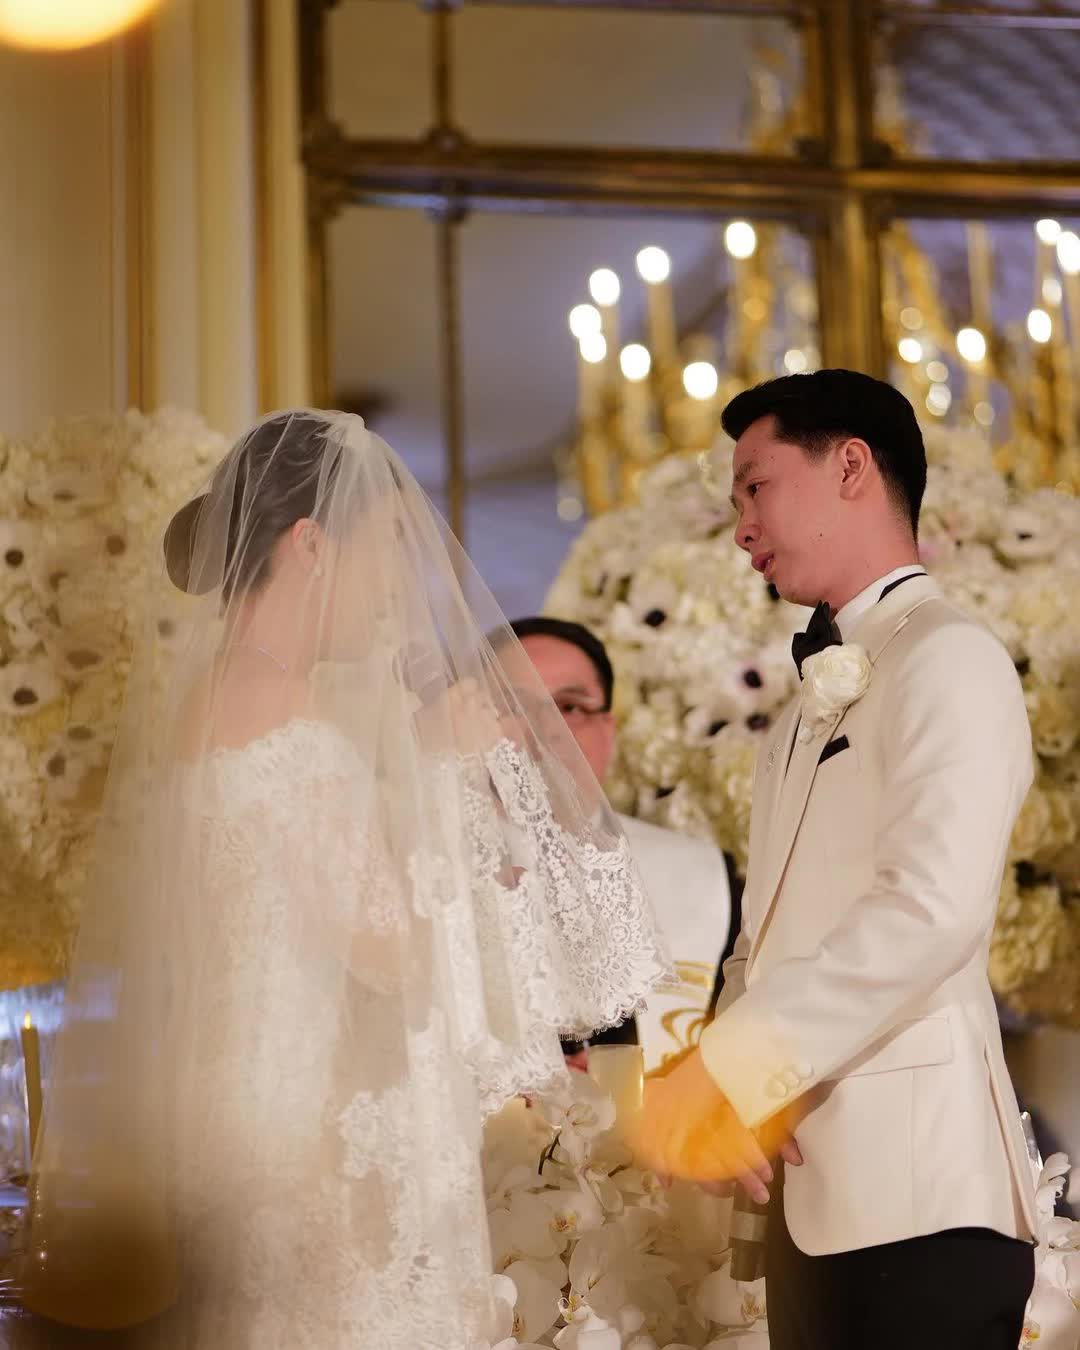 Sao cầu lông chính thức lấy vợ: Đám cưới xa hoa tổ chứ ở Paris, choáng váng trước gia thế tỷ USD của nhà gái - Ảnh 5.